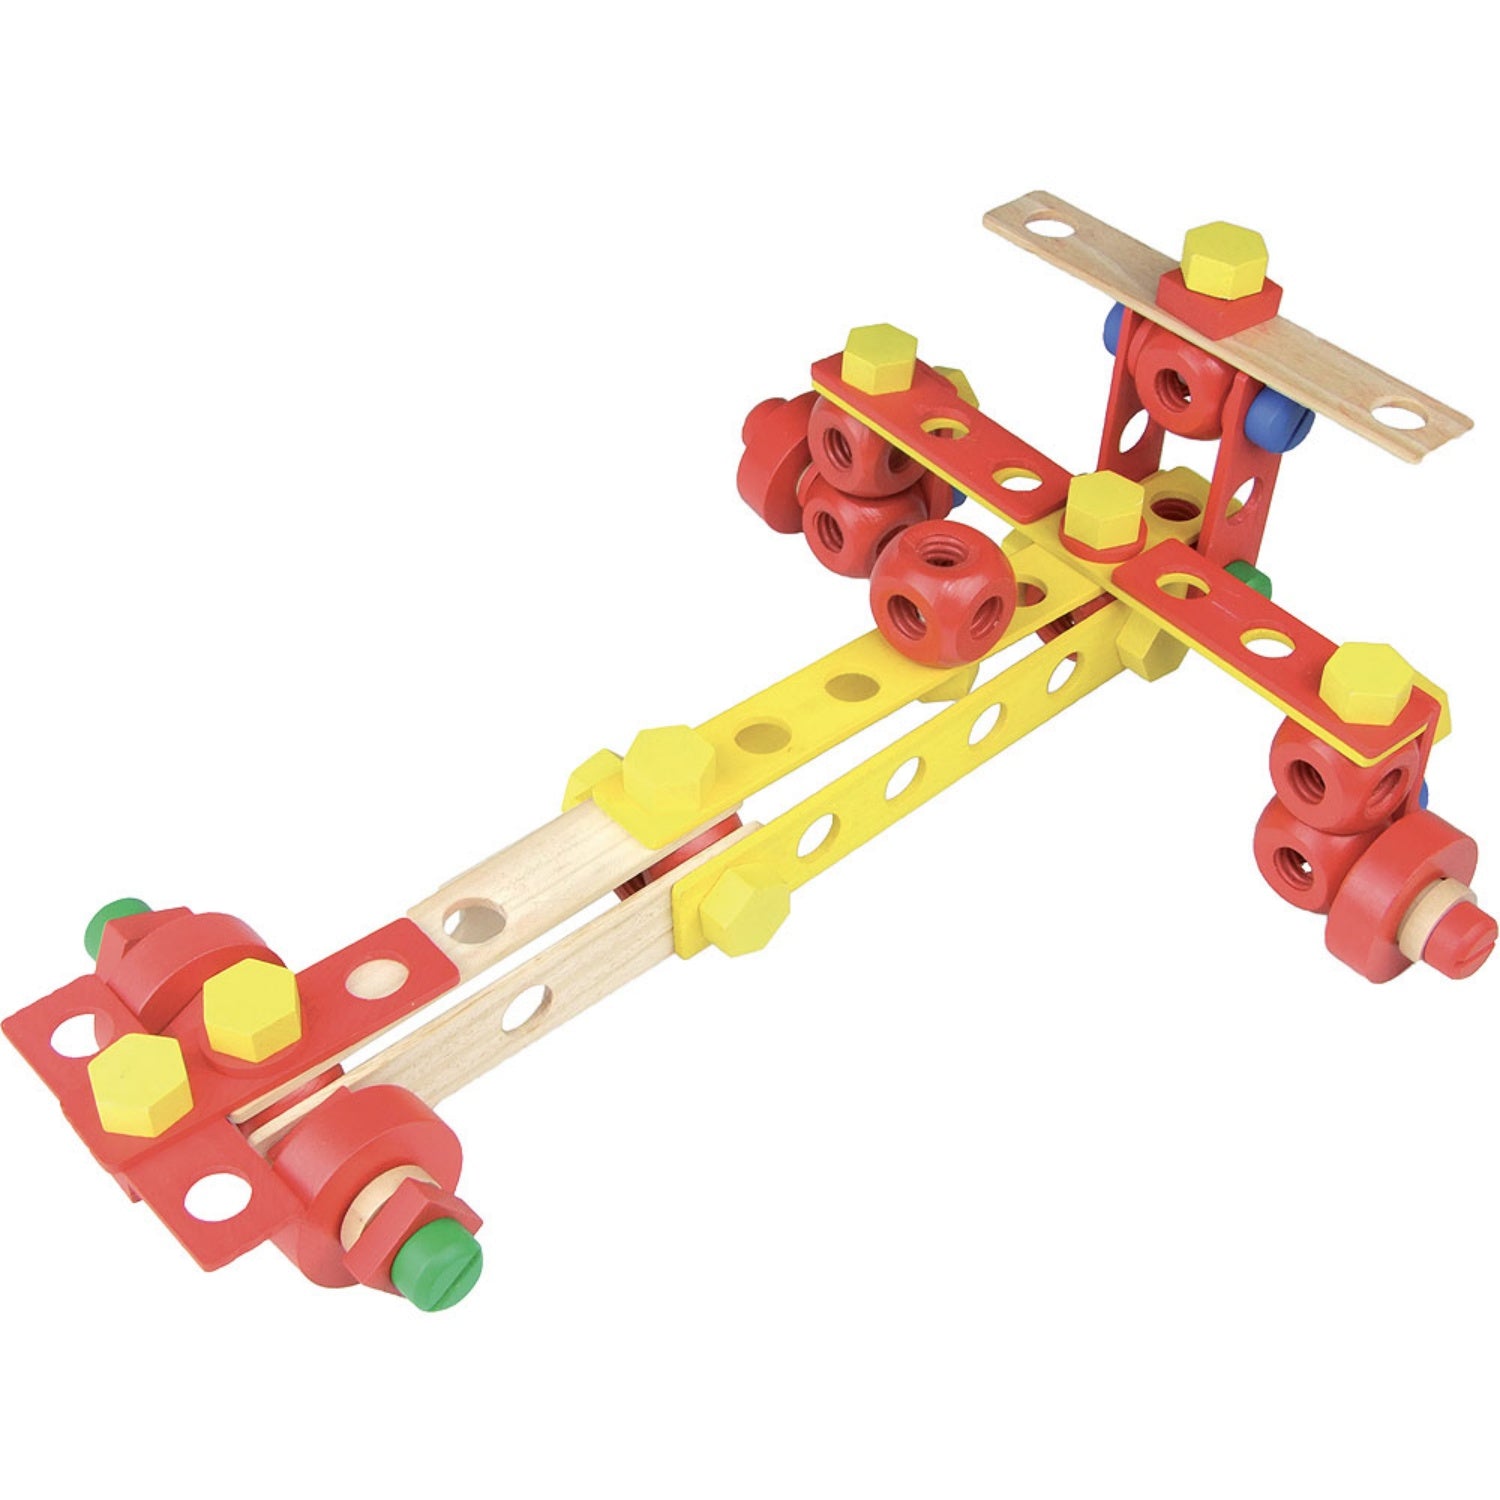 Vilac Wooden Construction Building Set ‘Batibloc’ | Educational Wooden Toy | Race Car | BeoVERDE.ie